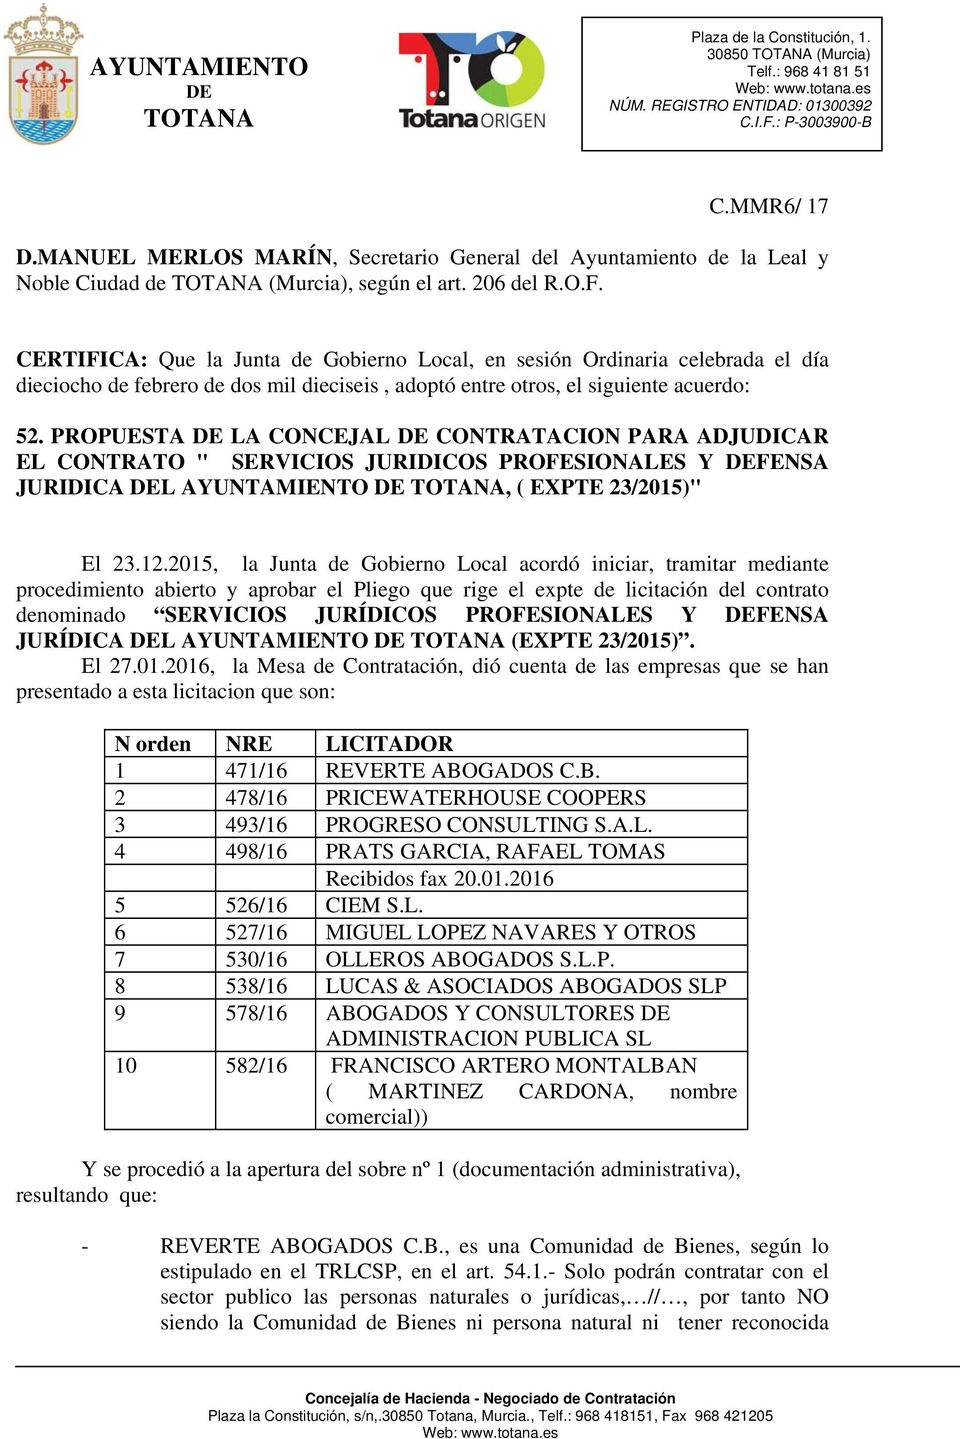 PROPUESTA LA CONCEJAL CONTRATACION PARA ADJUDICAR EL CONTRATO " SERVICIOS JURIDICOS PROFESIONALES Y FENSA JURIDICA L AYUNTAMIENTO, ( EXPTE 23/2015)" El 23.12.